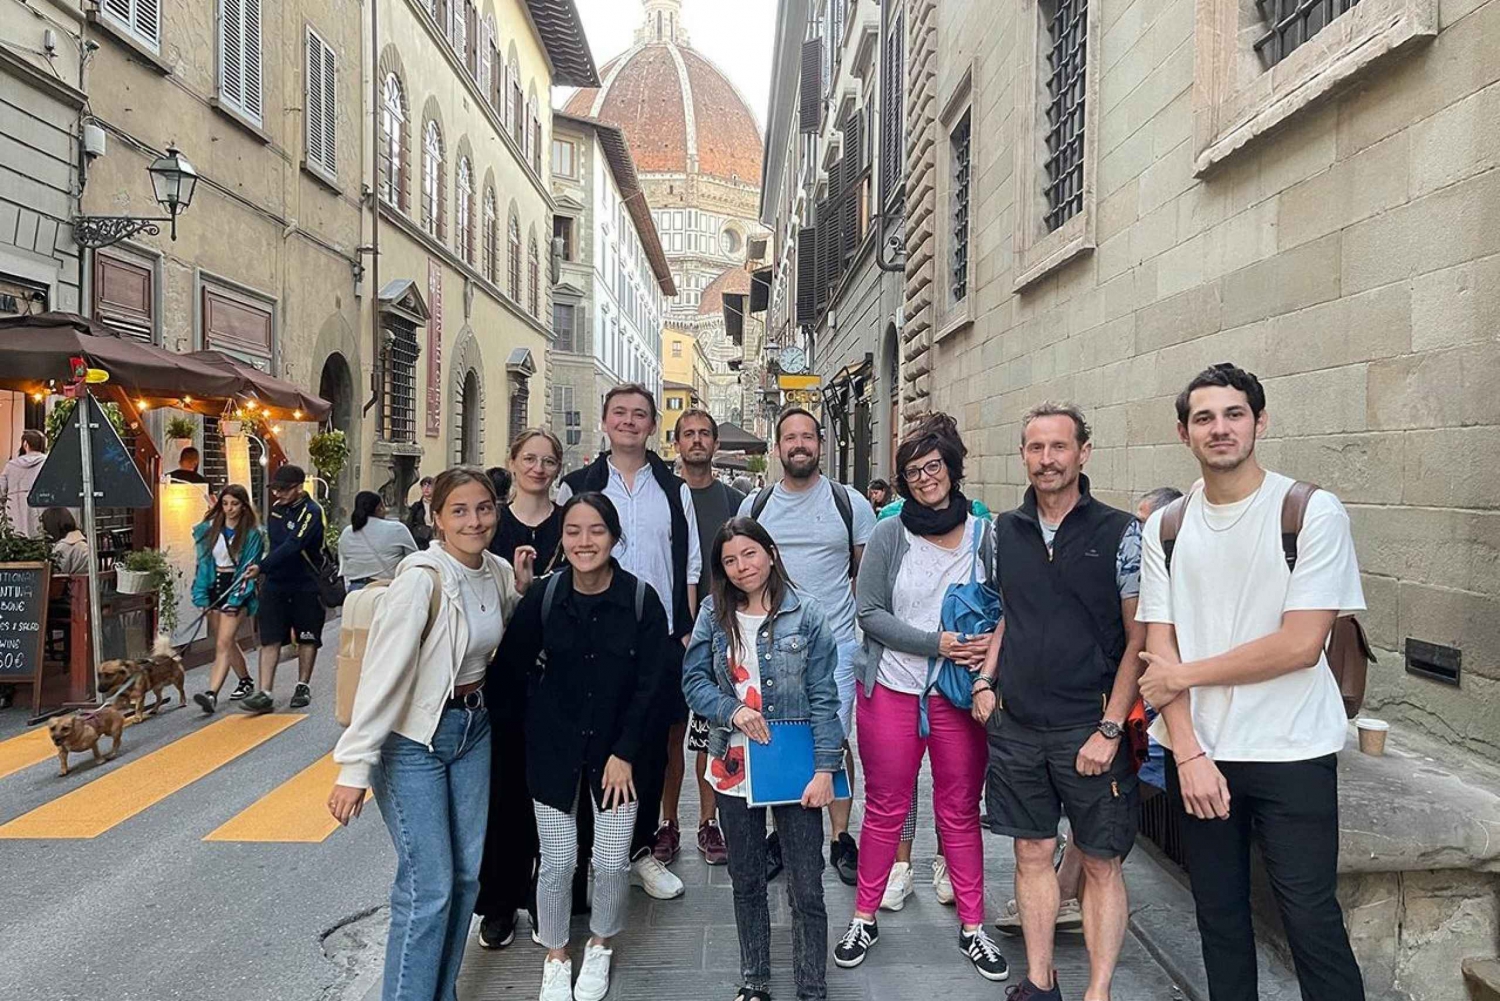 Florenz zu Fuß entdecken: Exklusive Führung mit Guide